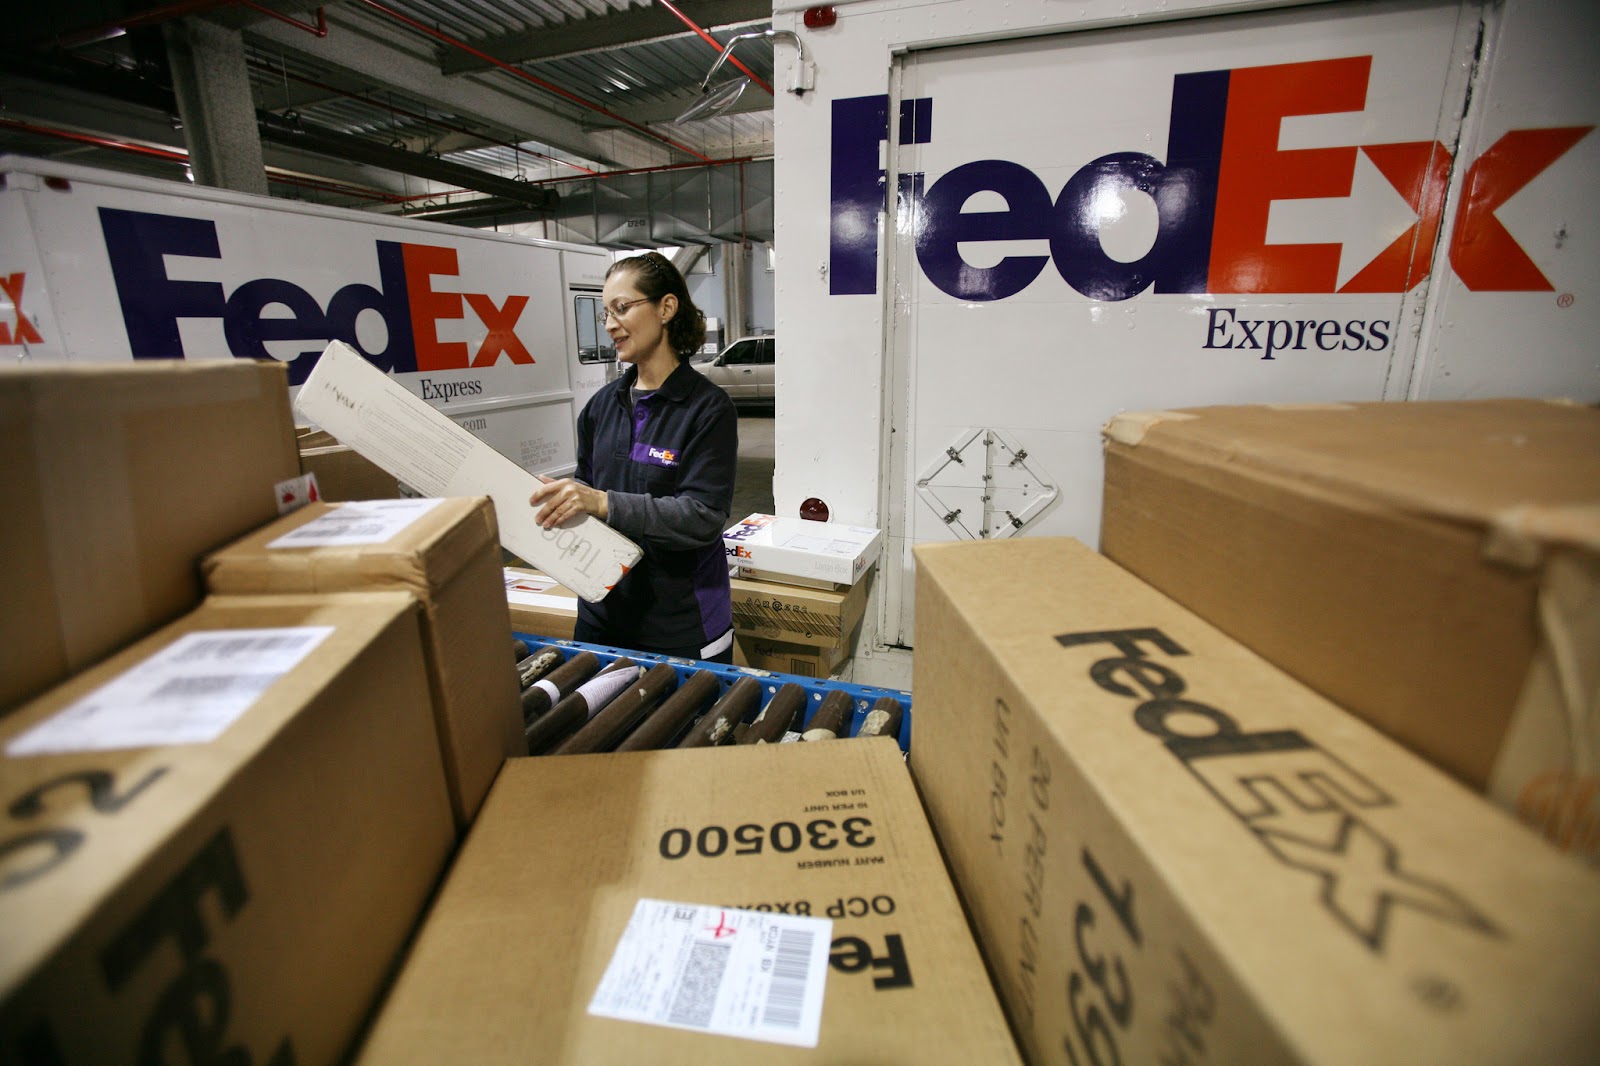 chuyển phát nhanh quốc tế Fedex